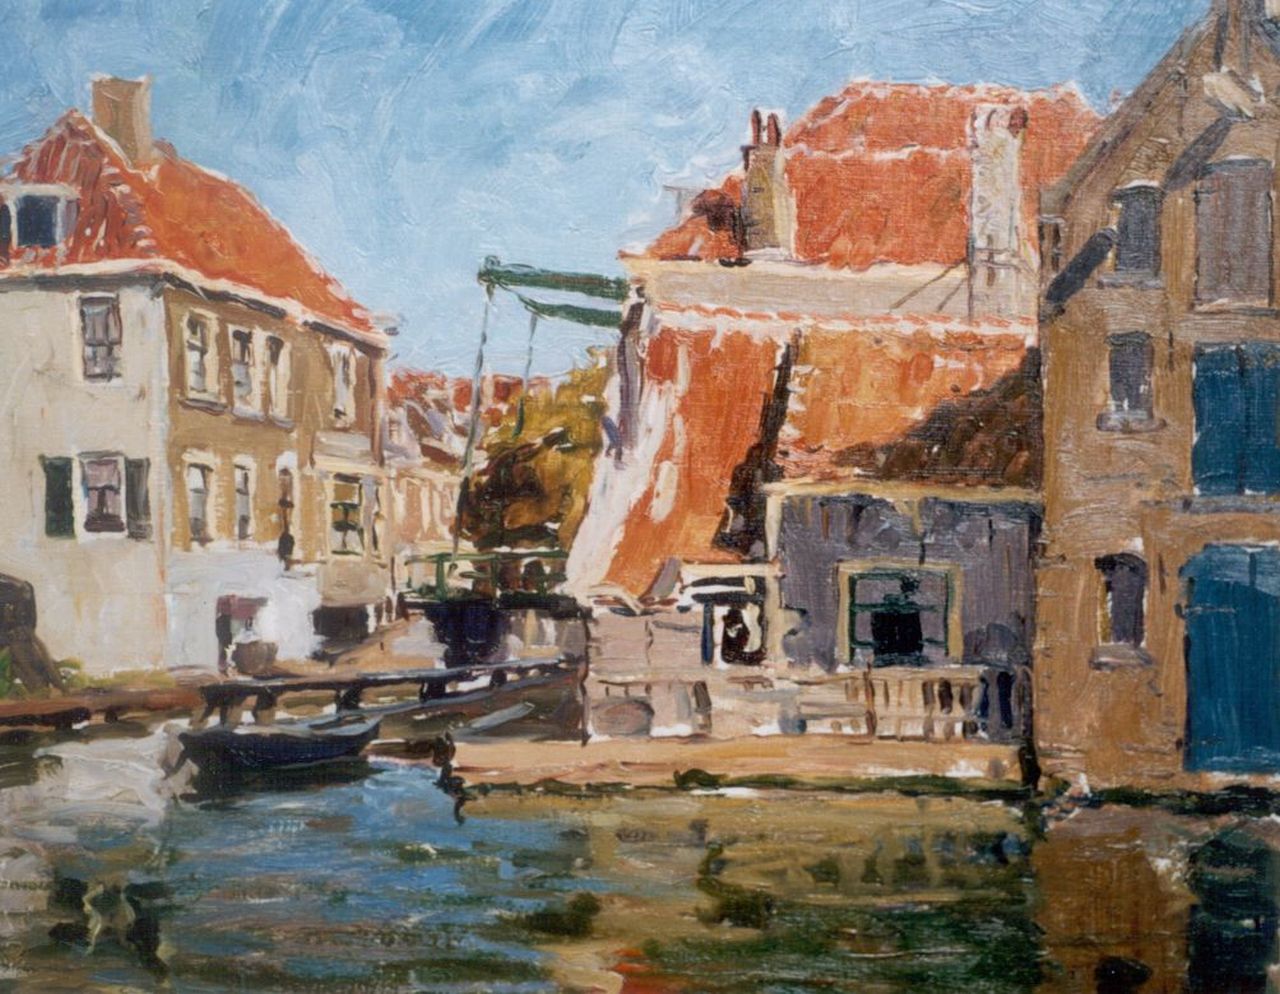 Dort W. van | Willem van Dort, Doorkijkje in oud Hollands dorp, olieverf op doek 45,4 x 55,2 cm, gesigneerd rechtsonder